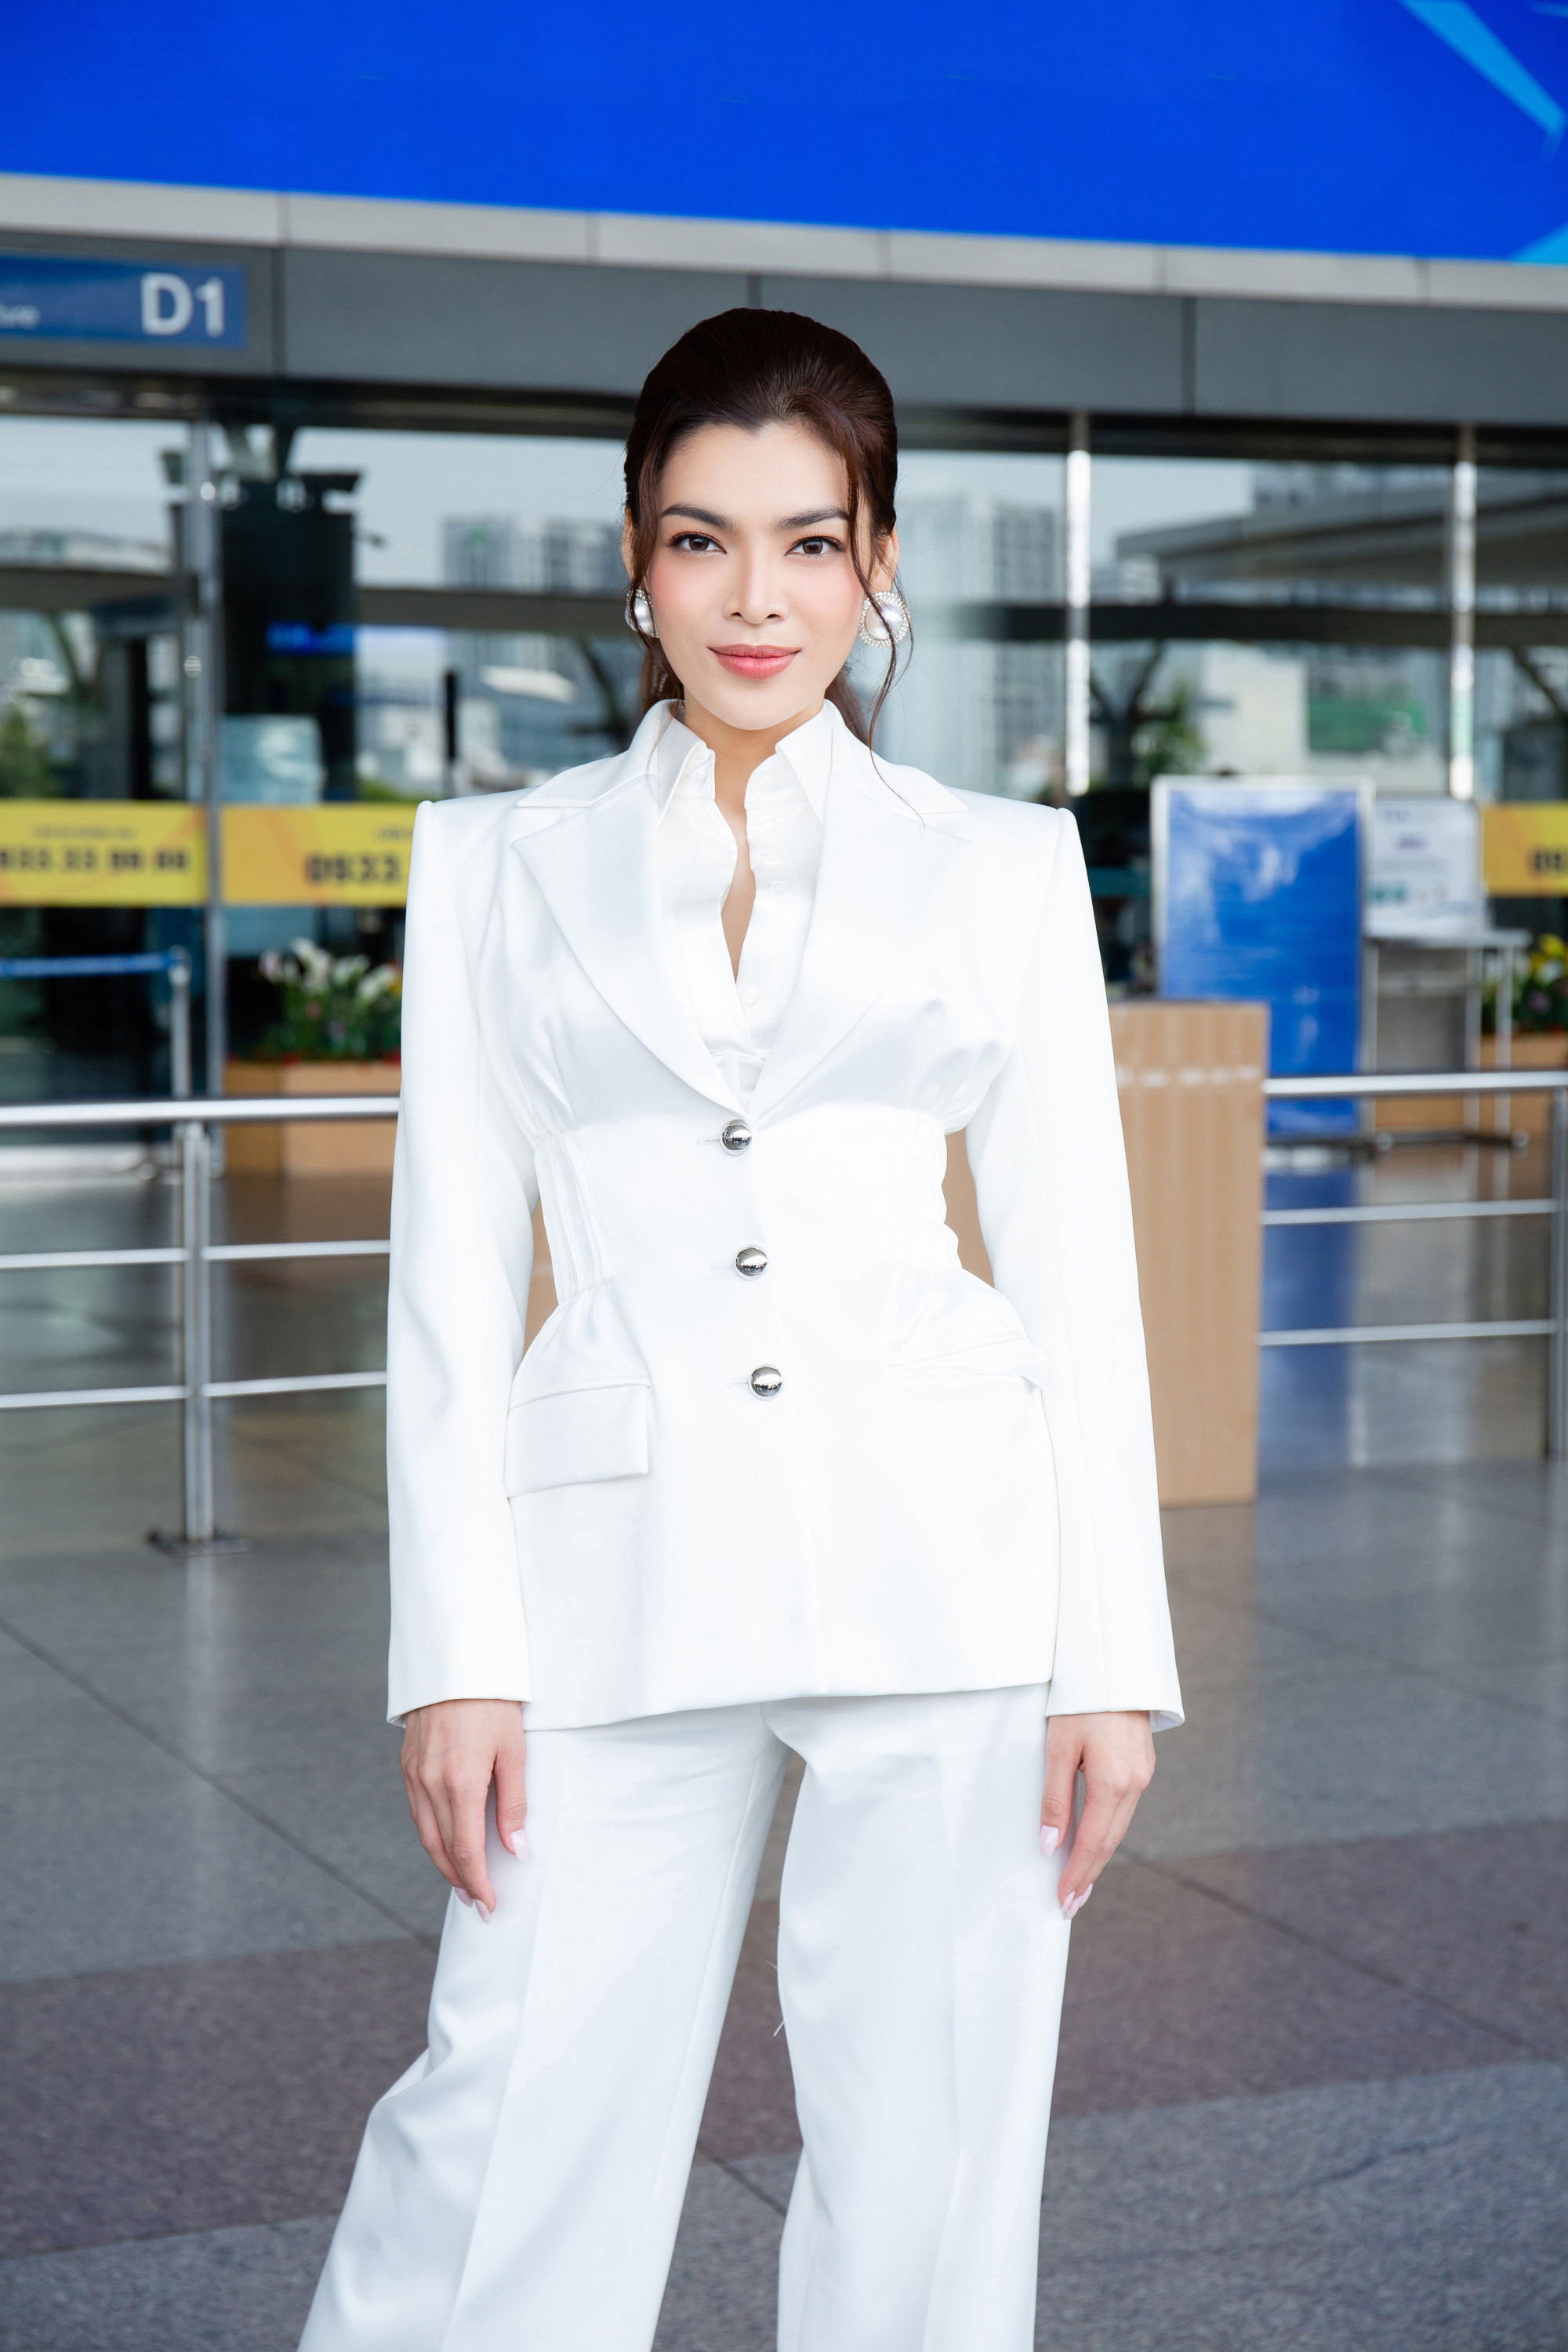 Mới đây, hoa hậu Trân Đài có mặt tại sân bay Tân Sơn Nhất để bay sang Thái Lan tham gia cuộc thi Miss International Queen 2022. Người đẹp nhận được khá nhiều lời khen về sắc vóc hoàn vóc và thần sắc tươi tắn của mình.